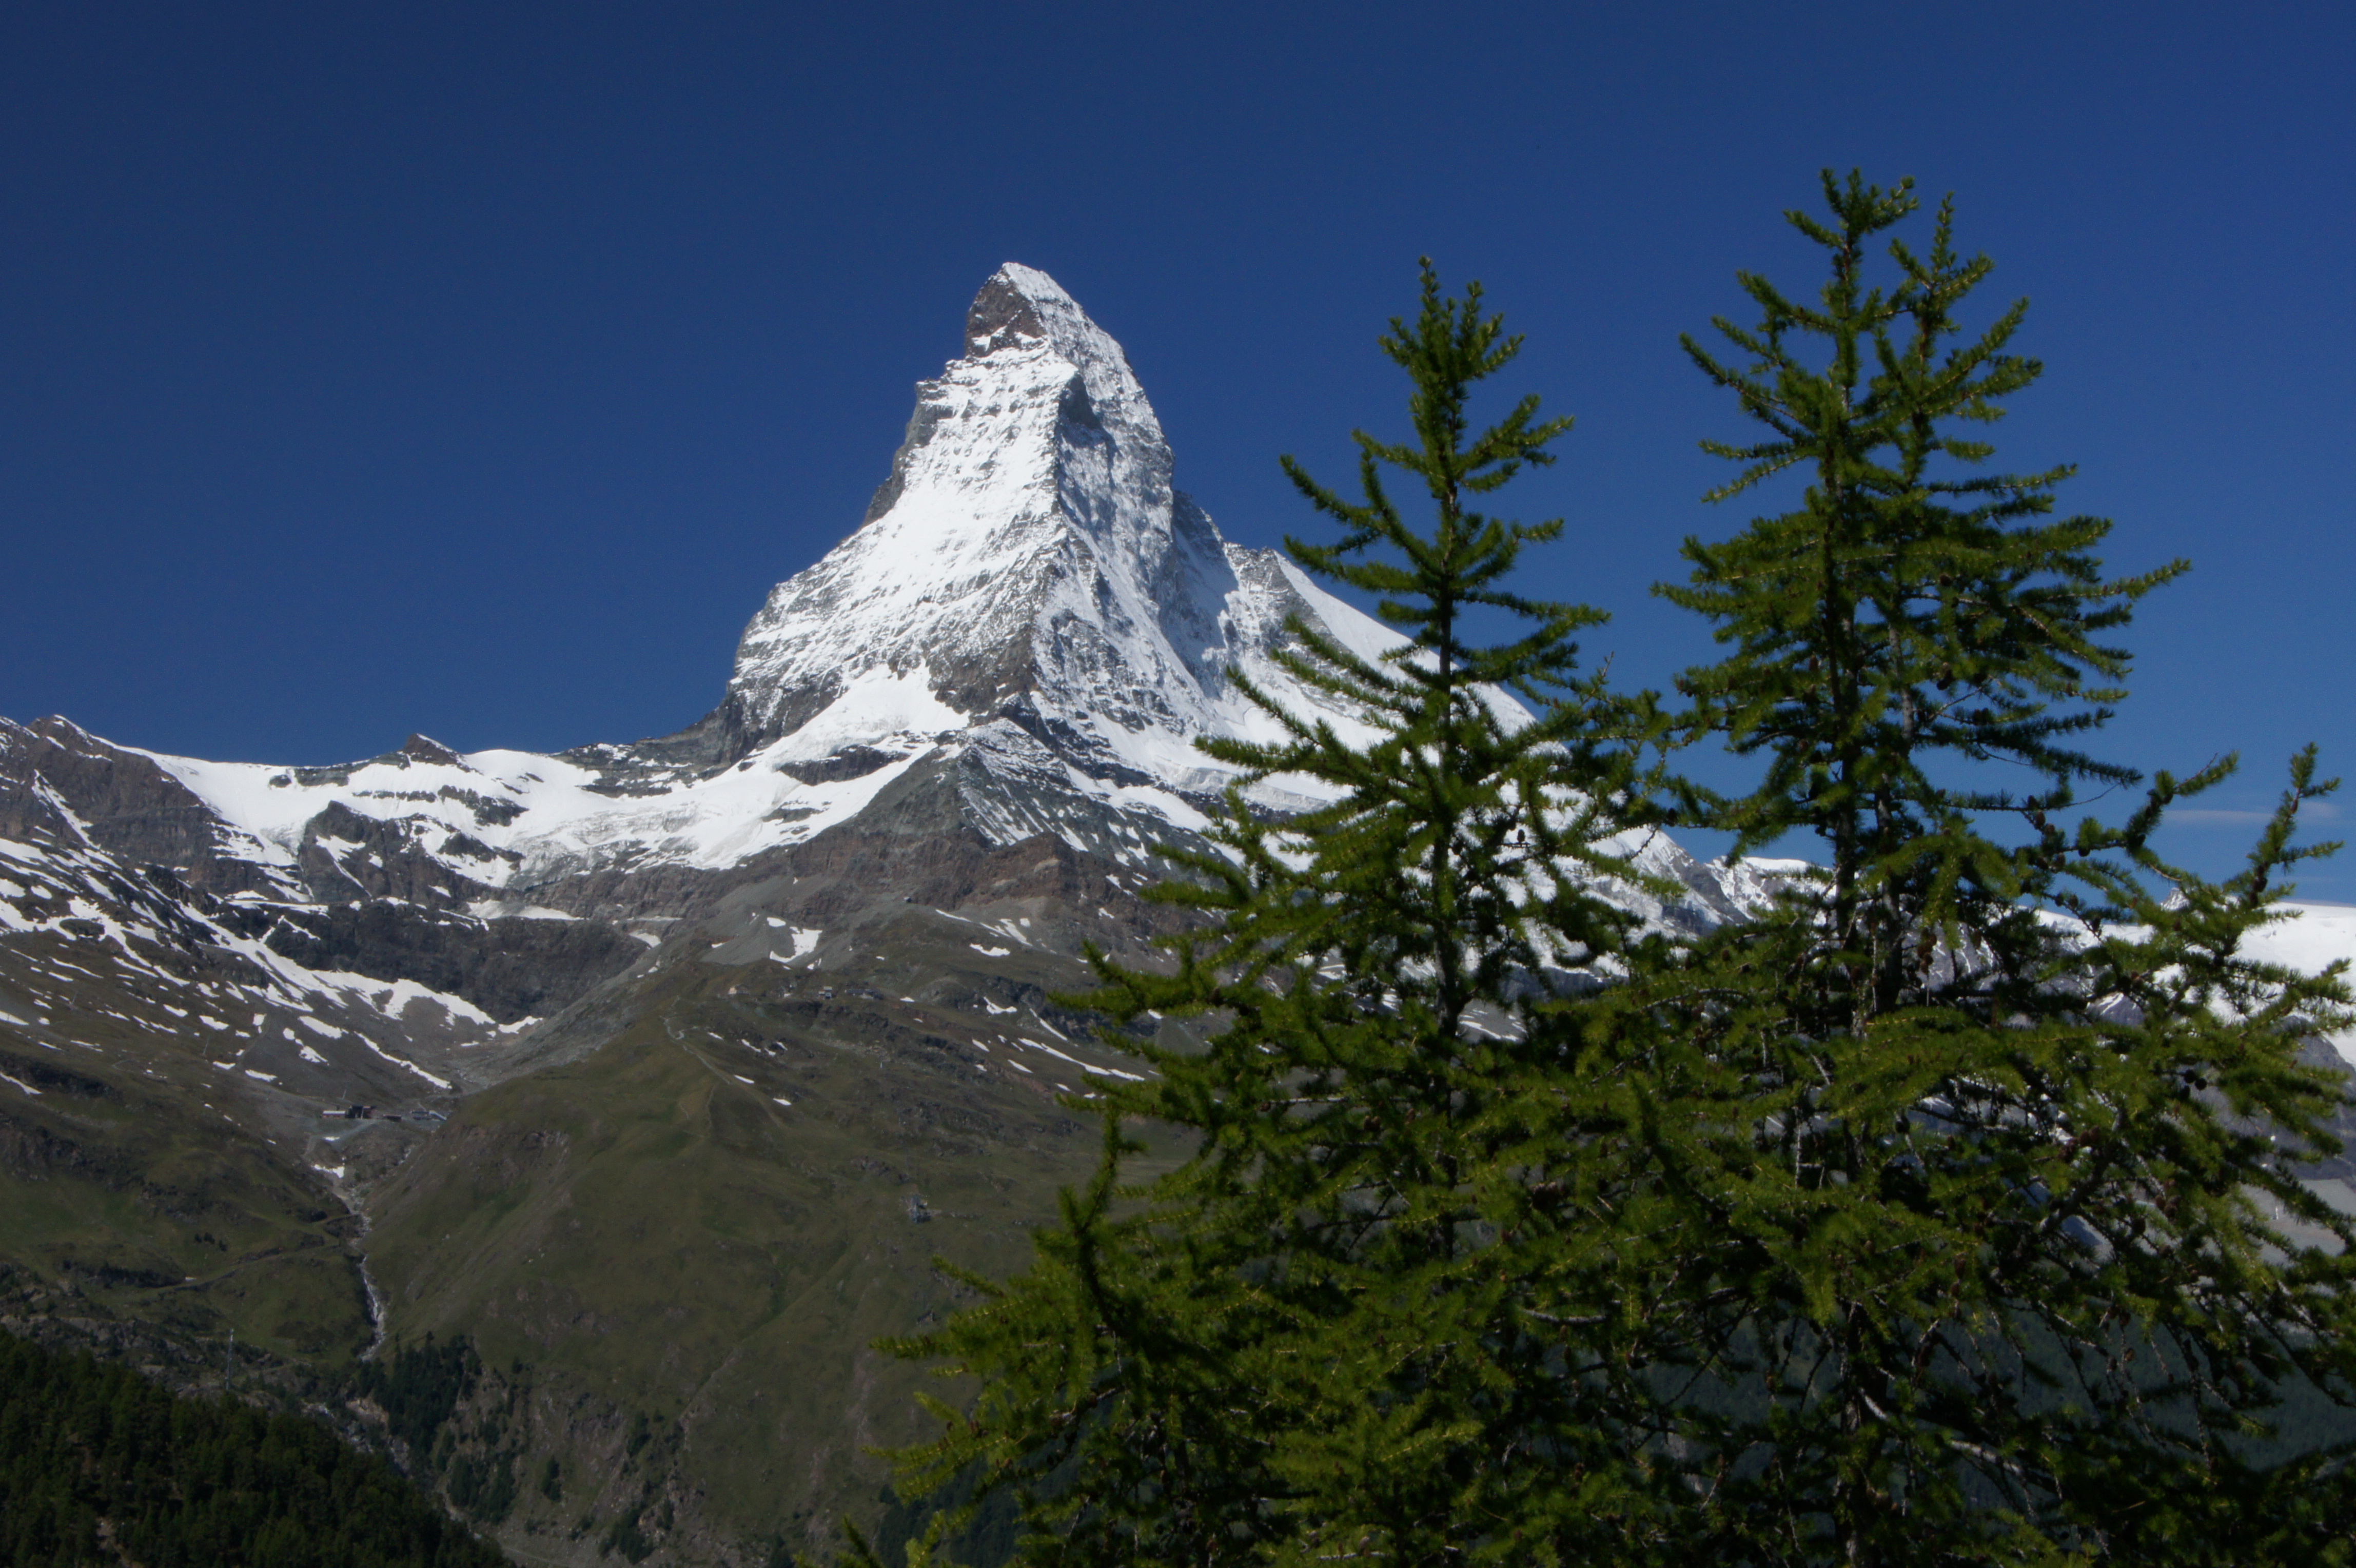 Hiking the Matterhorn Trail in 1 day | Switzerland